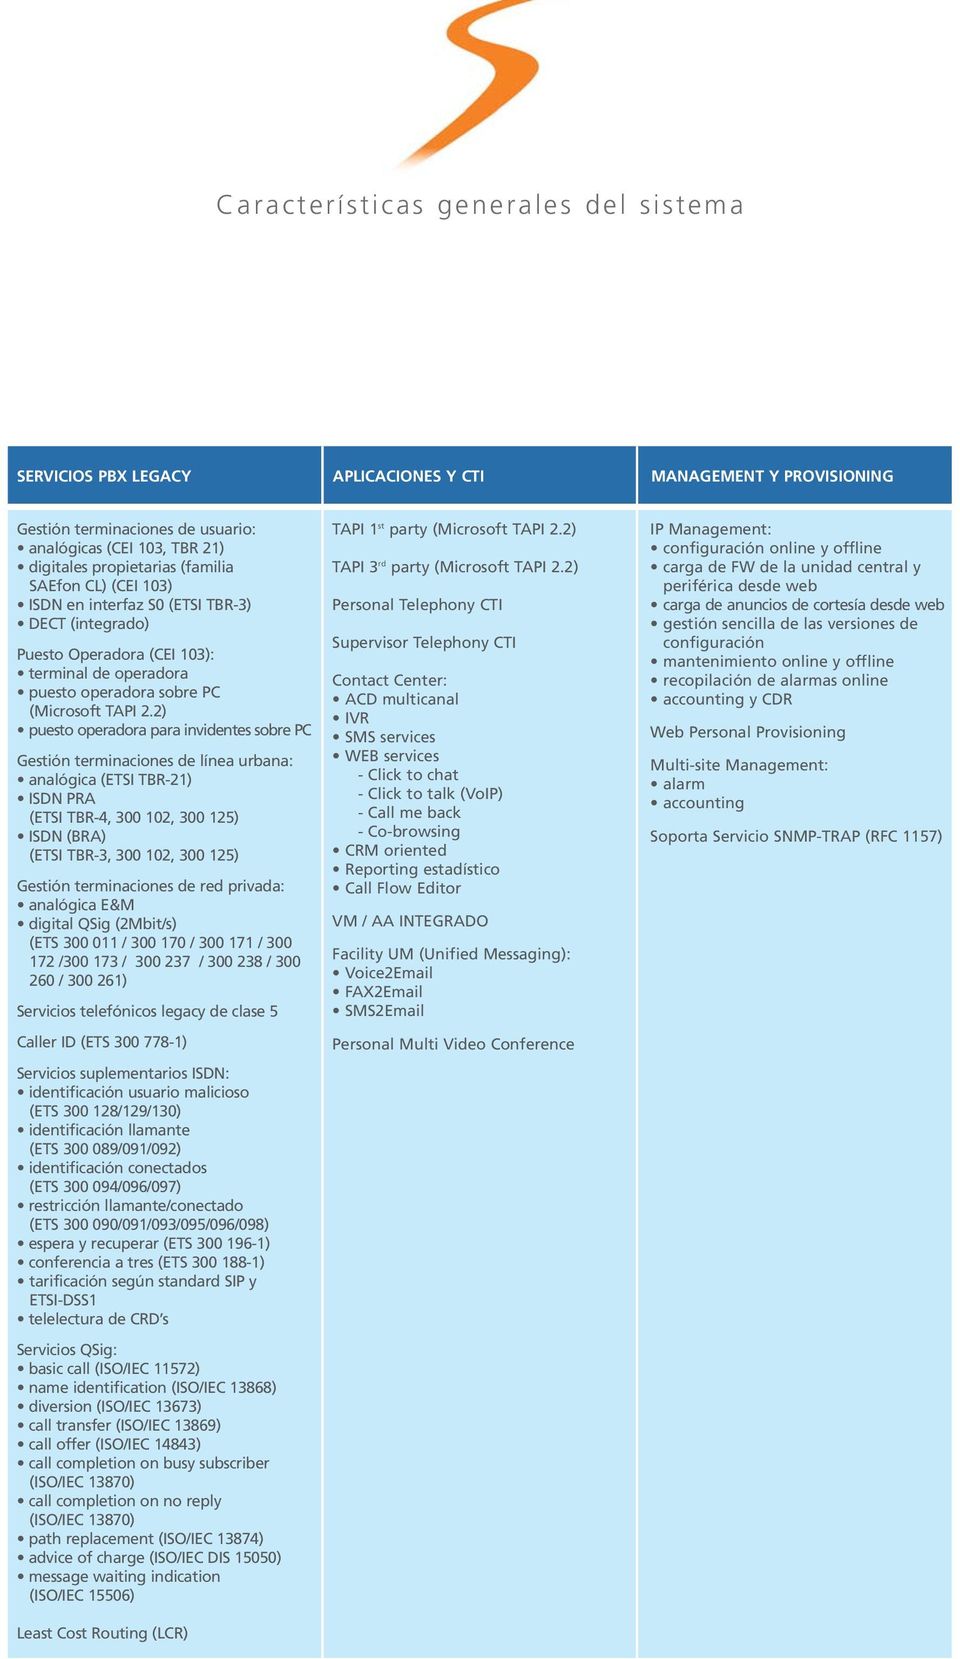 2) puesto operadora para invidentes sobre PC Gestión terminaciones de línea urbana: analógica (ETSI TBR-21) ISDN PRA (ETSI TBR-4, 300 102, 300 125) ISDN (BRA) (ETSI TBR-3, 300 102, 300 125) Gestión